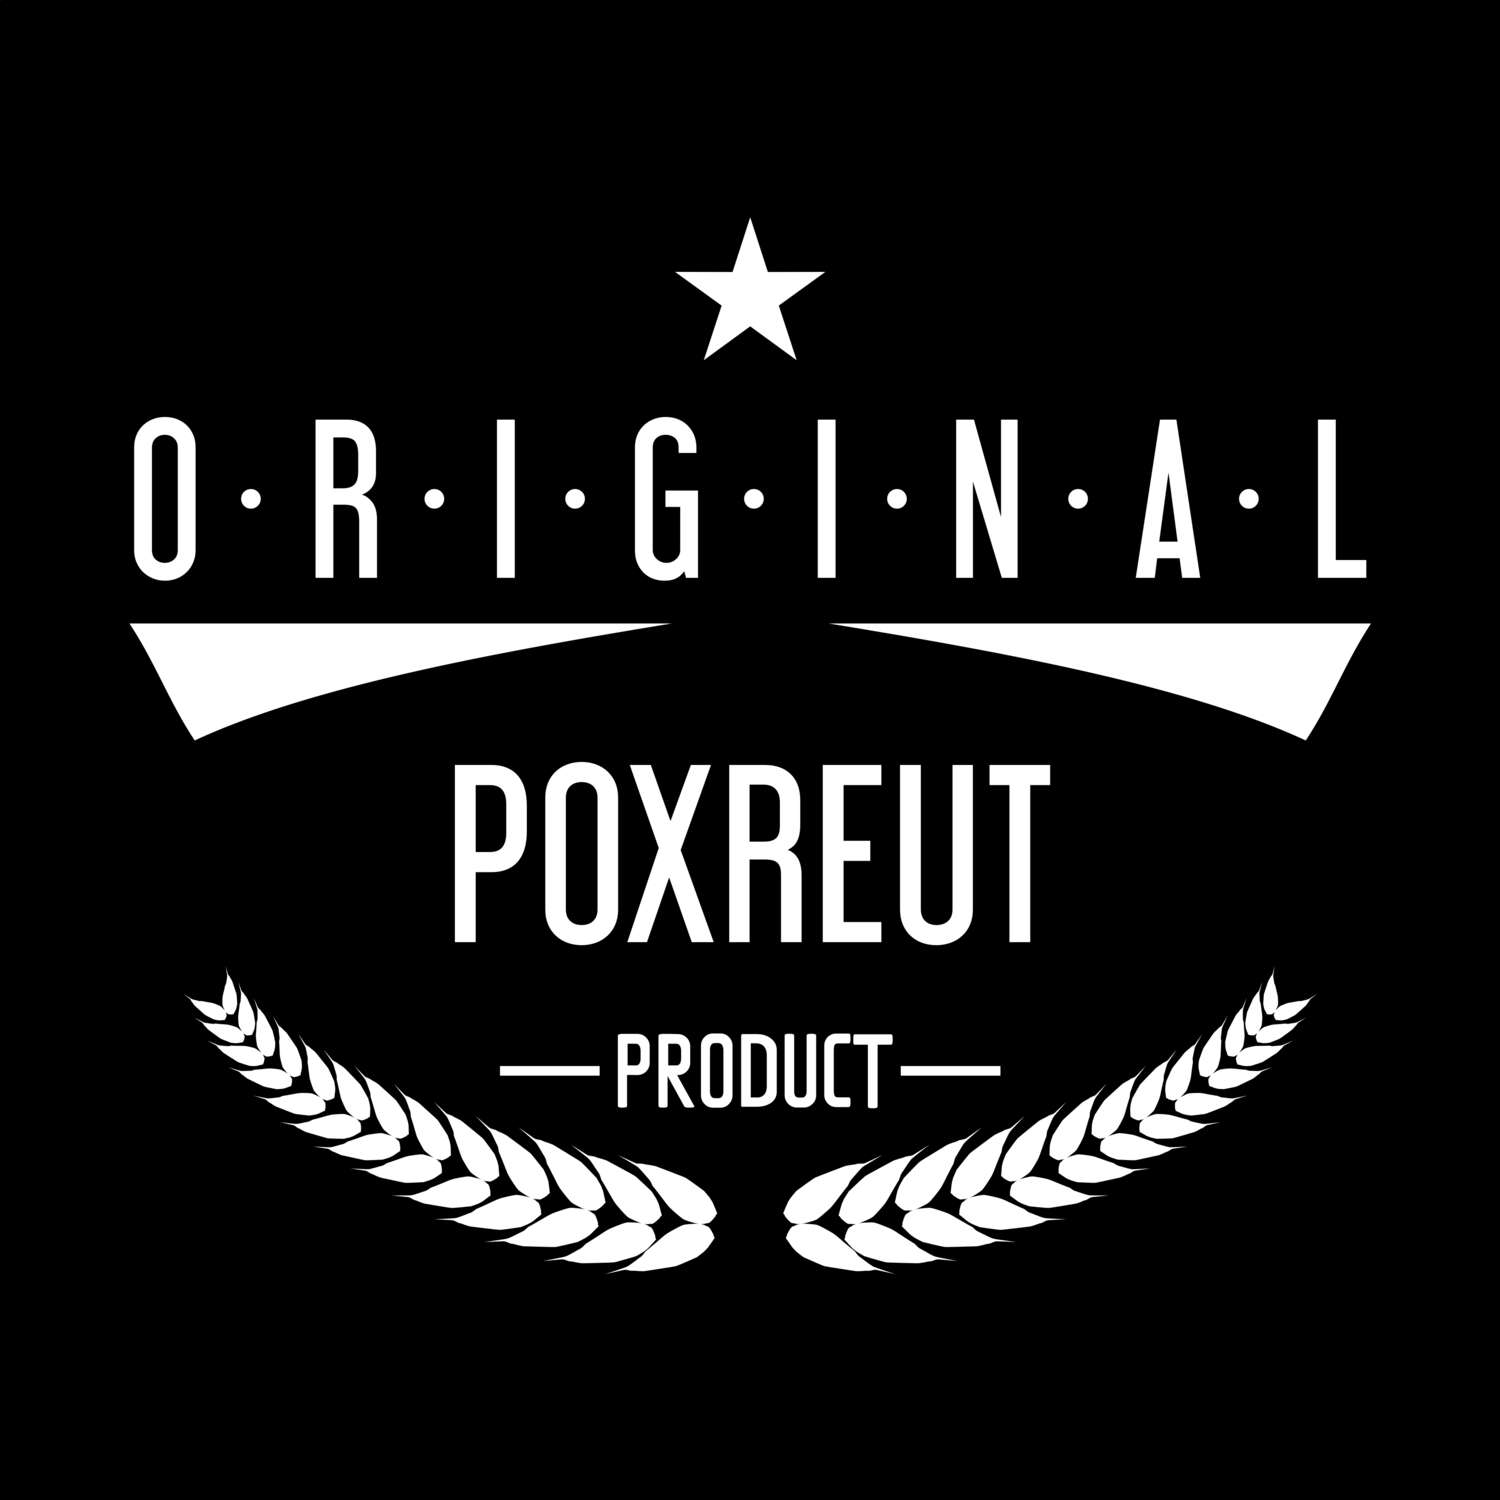 Poxreut T-Shirt »Original Product«